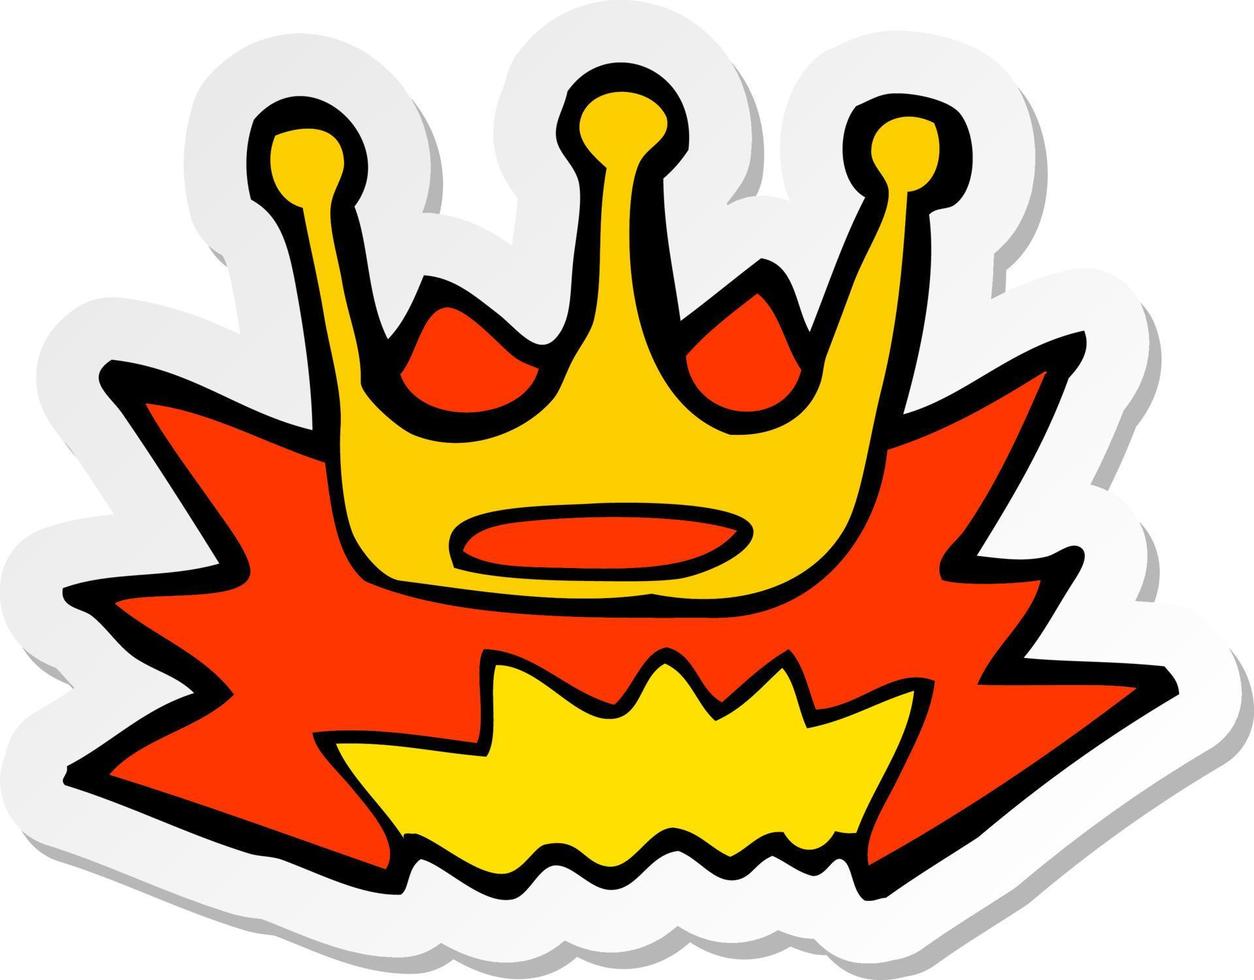 sticker of a cartoon crown symbol vector